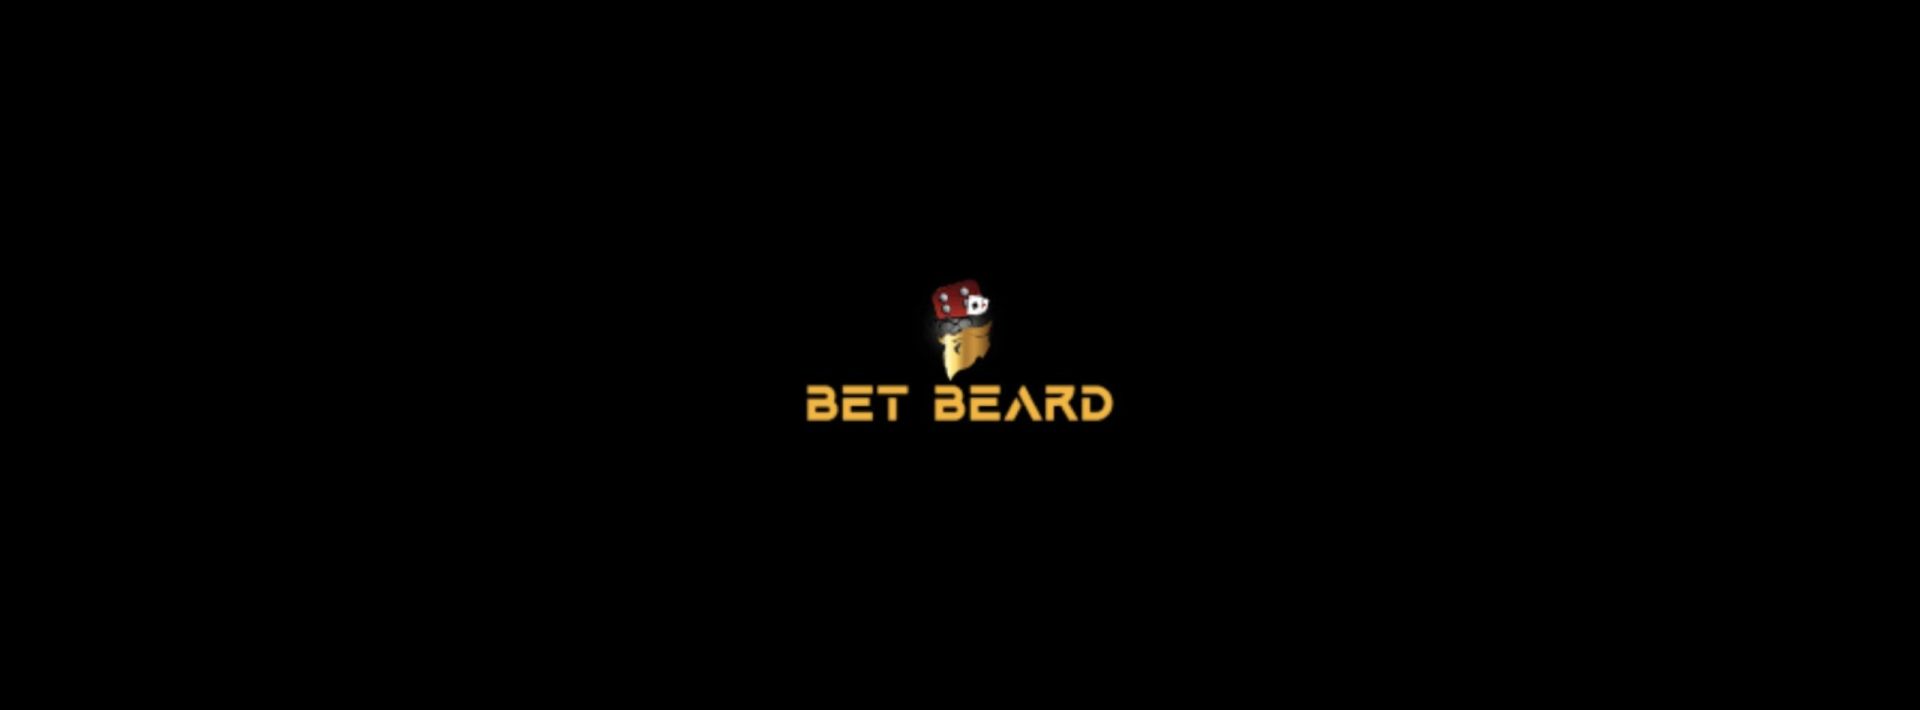 Betbeard fue nombrado el mejor casino de criptomonedas del año